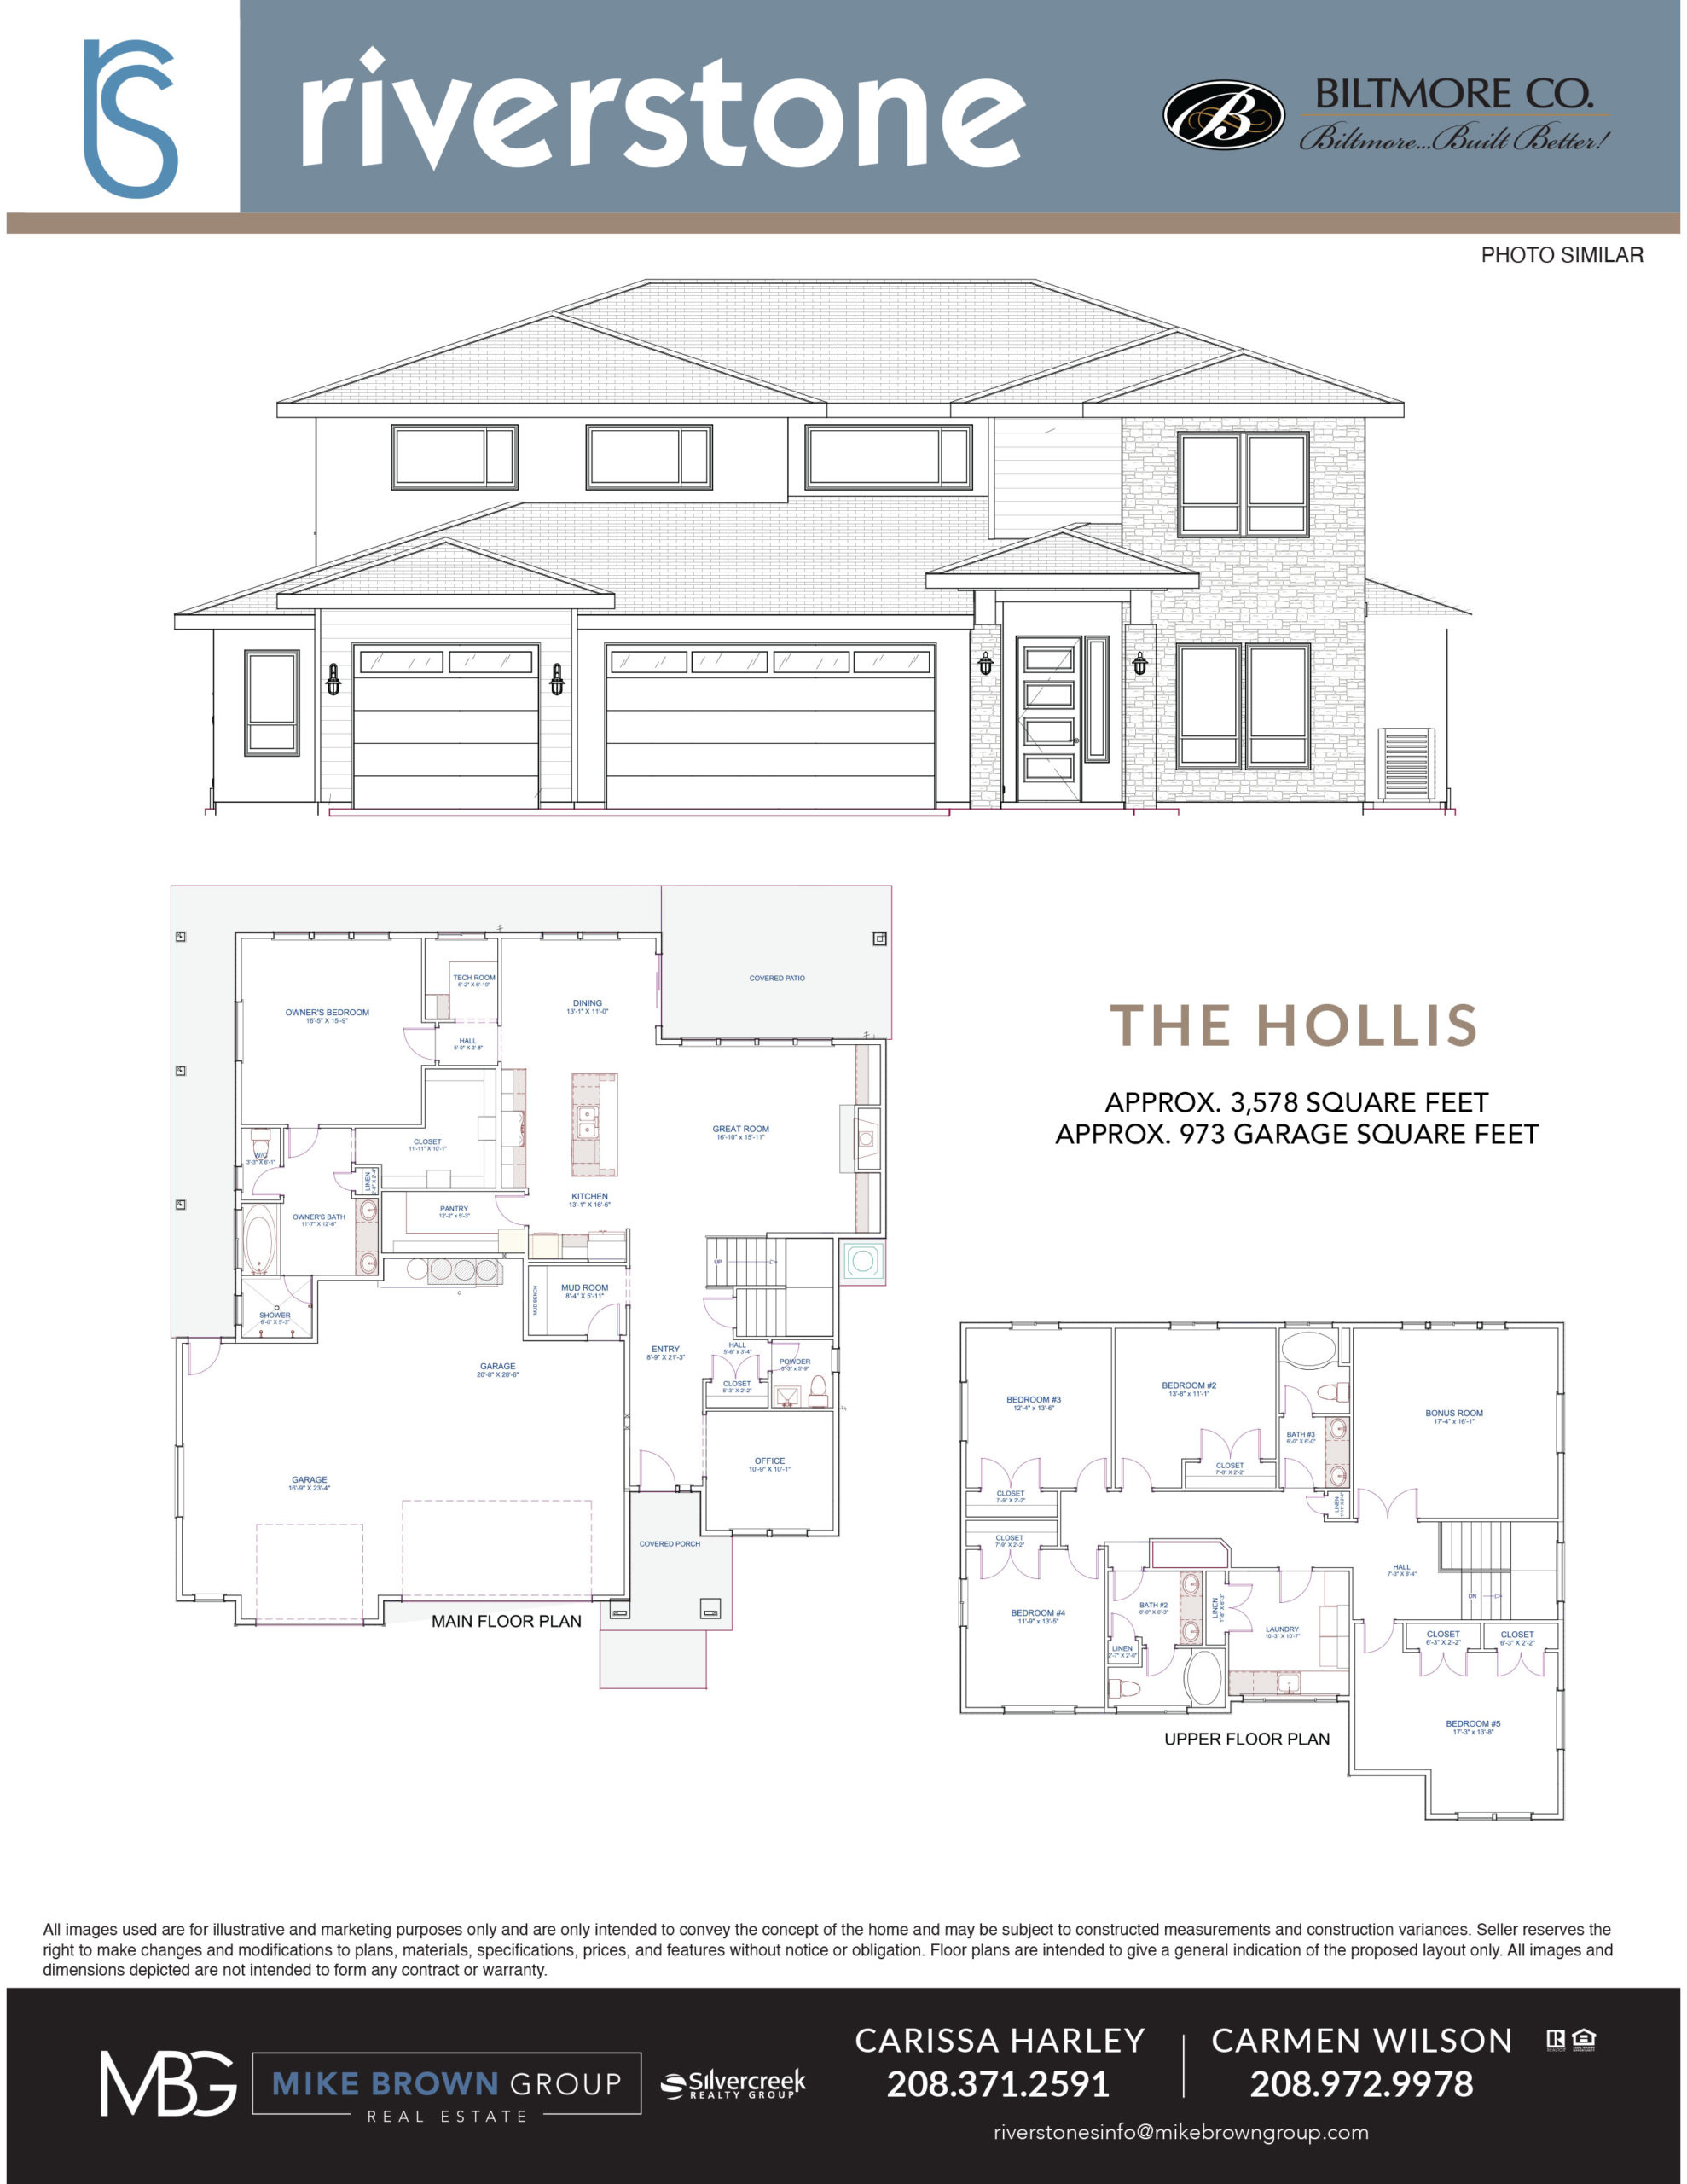 Riverstone Hollis Floorplan and rendering